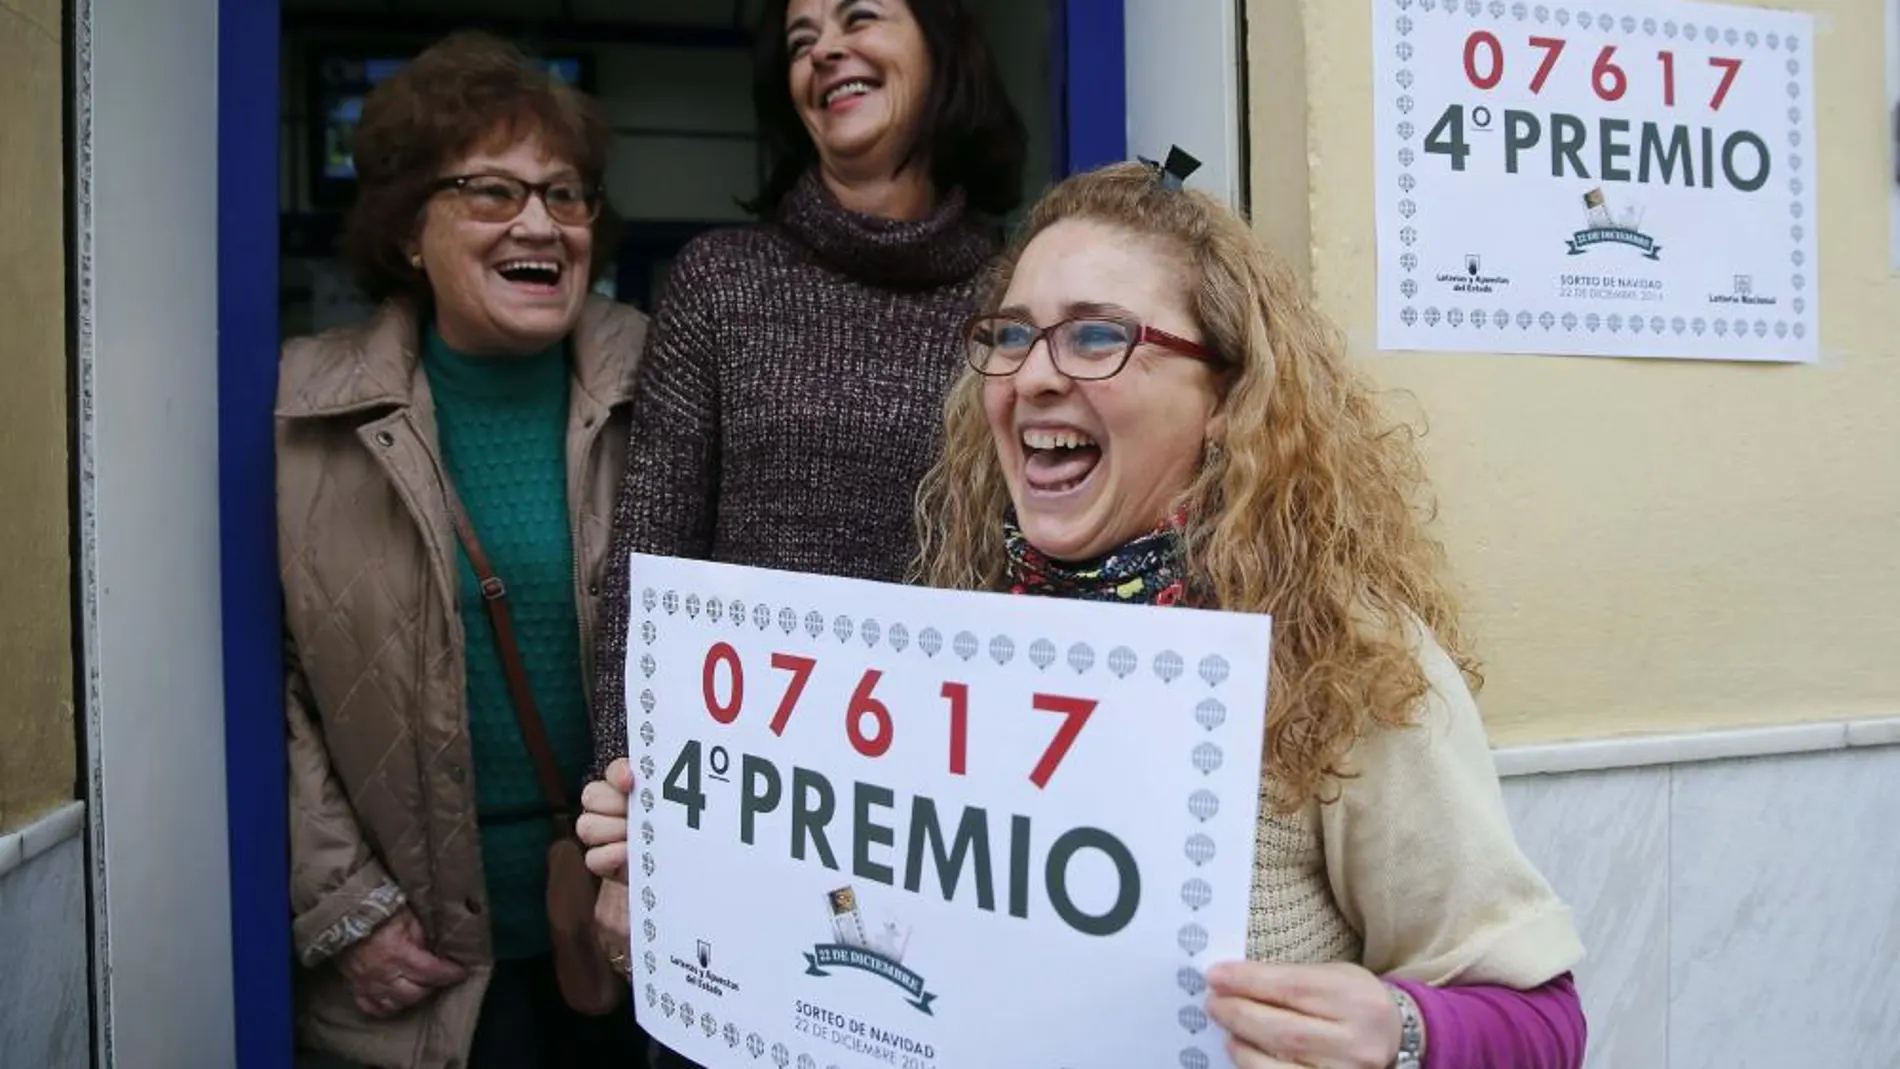 Rosario Pino, empleada de la administración situada en la calle José Tallaví junto a la titular de dicho establecimiento Isabel Valenzuela (c), sostiene un cartel con el 4º Premio, 07617